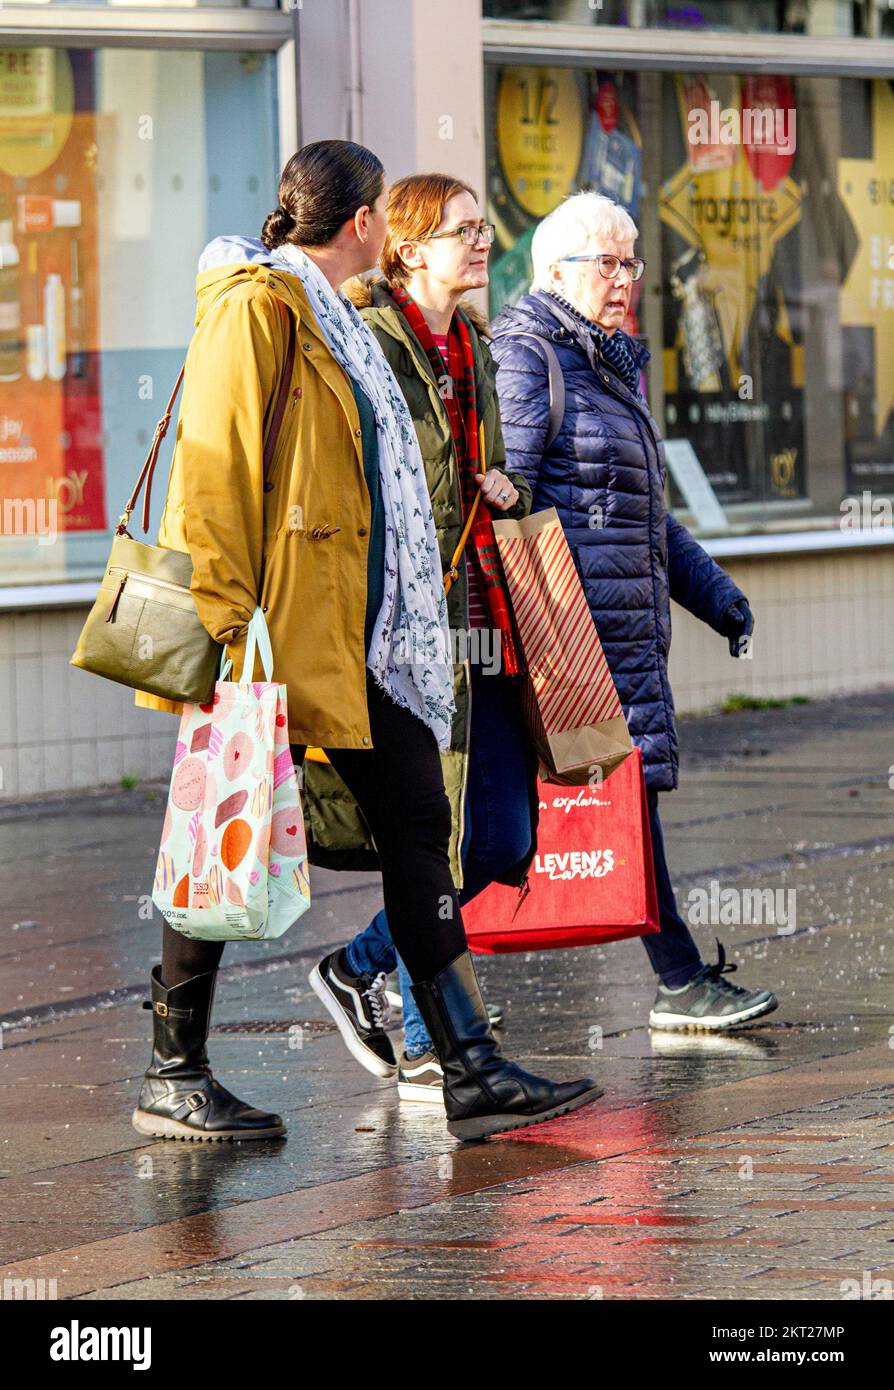 Dundee, Tayside, Écosse, Royaume-Uni. 29th novembre 2022. Météo au Royaume-Uni : les températures dans le nord-est de l'Écosse ont atteint 6°C le jour de novembre, froid et ensoleillé. En dépit de la réalité, l'inflation est à un niveau élevé de 41 ans de 11,1%, les gens sortent sur leur vie quotidienne et se précipitent dans les boutiques du centre-ville de Dundee à la recherche de ventes d'hiver. Crédit : Dundee Photographics/Alamy Live News Banque D'Images